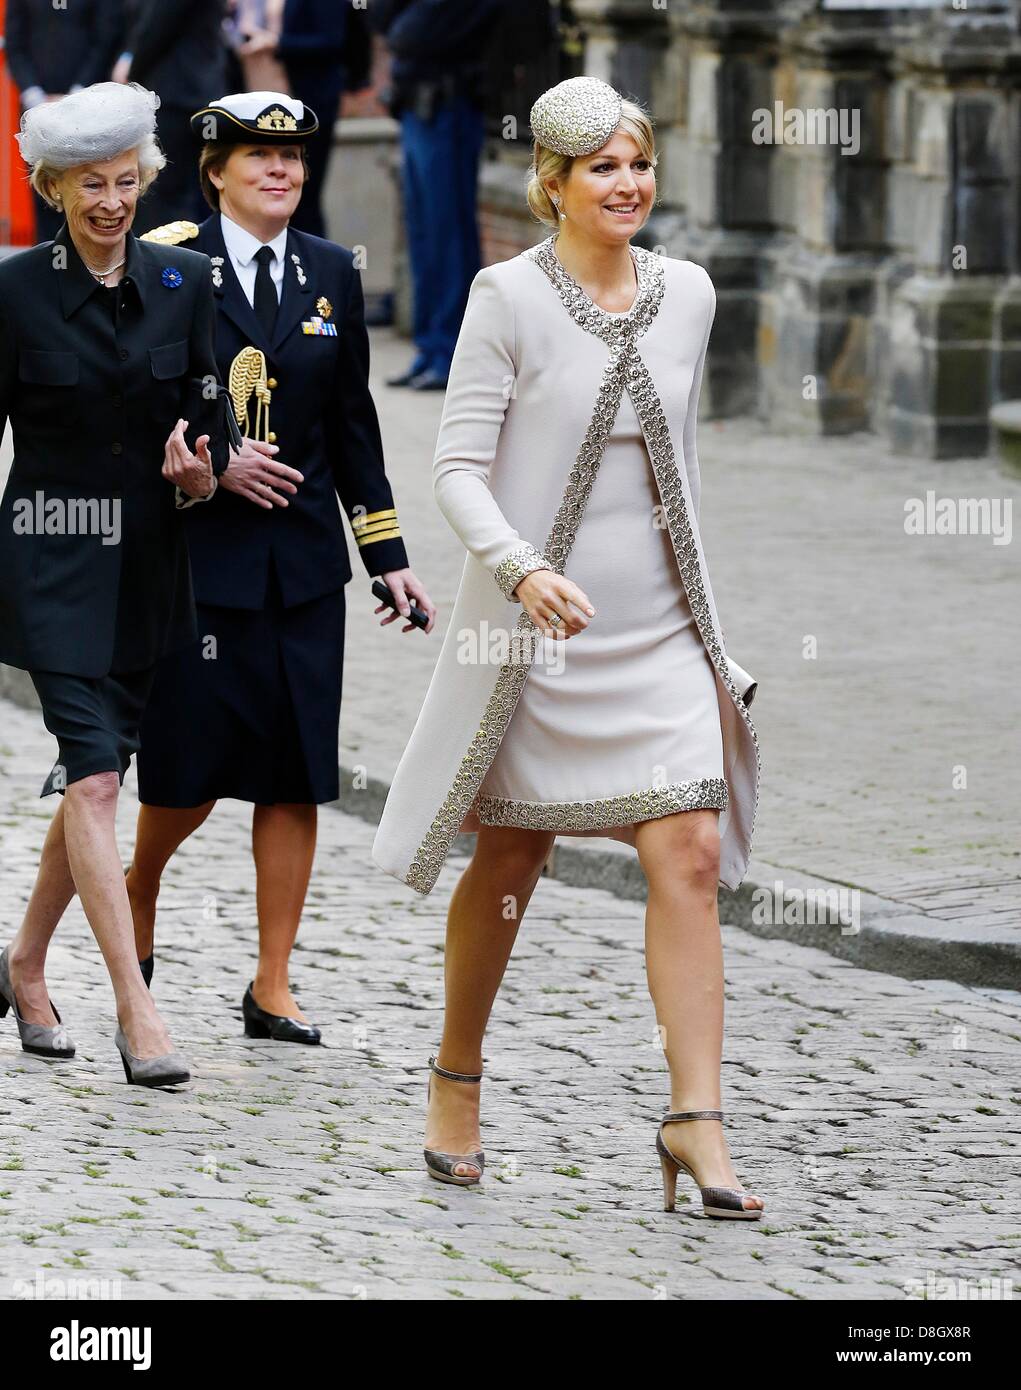 Groningen, Pays-Bas. 28 mai 2013. Reine Maxima des Pays-Bas visite la  province de Groningue, au cours de la visite du couple à travers les  Pays-Bas comme nouveau roi et reine. Le Roi